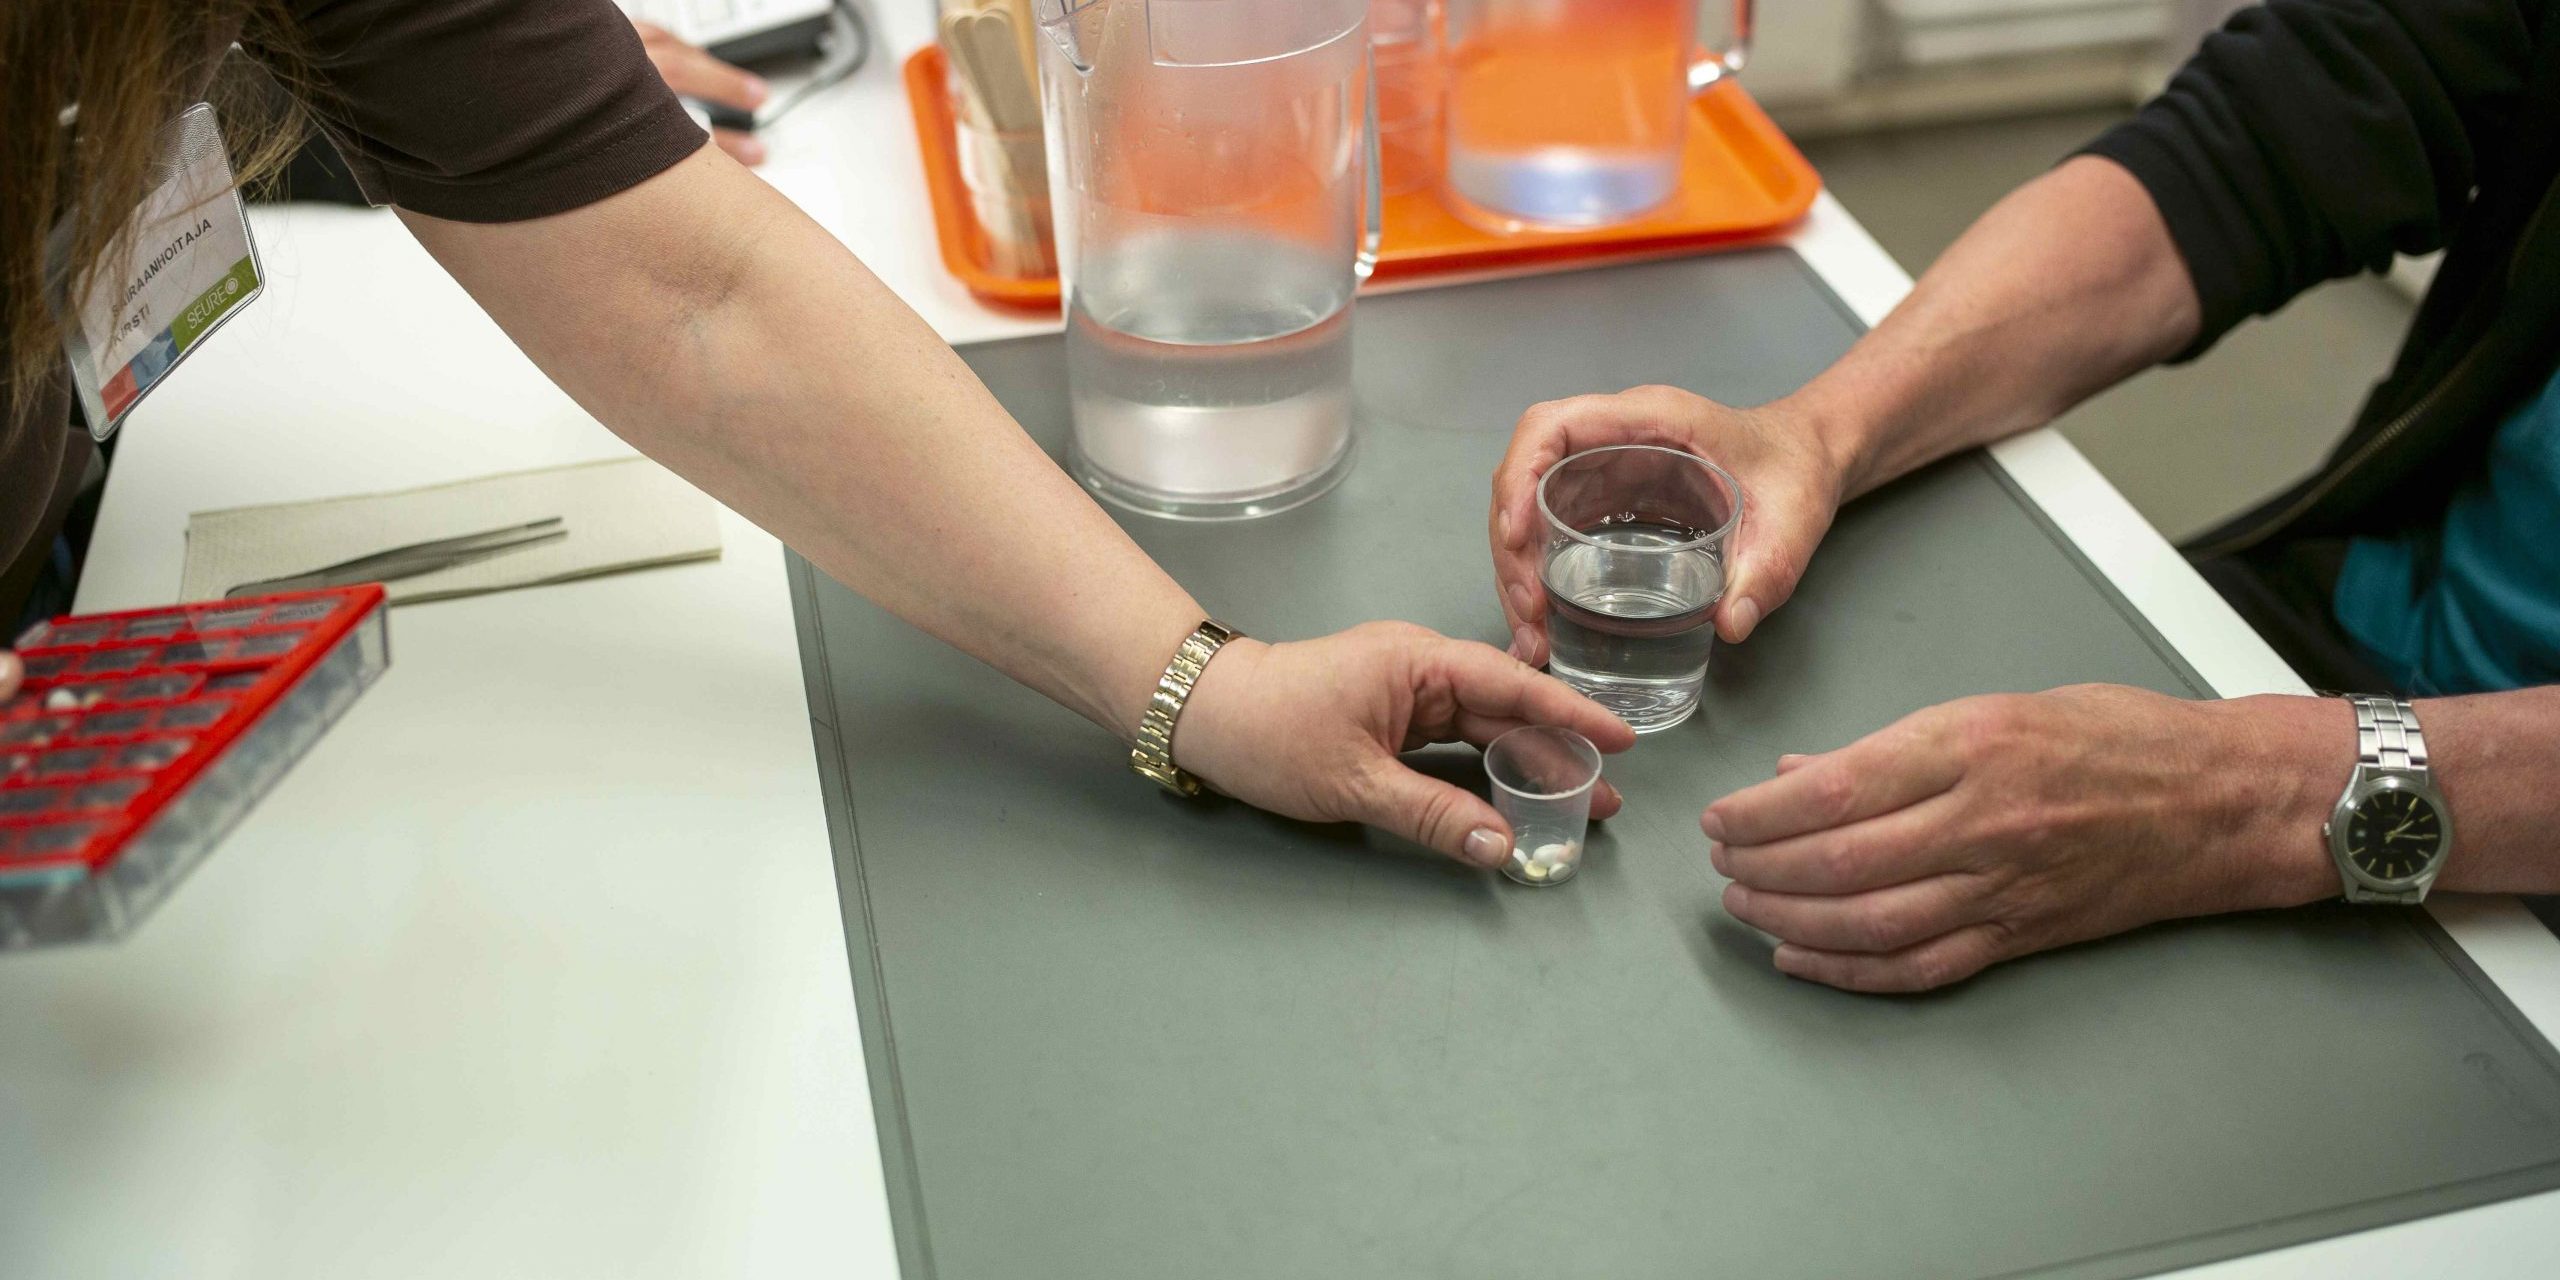 Hoitaja ojentaa vesilasia pitävälle ihmiselle lääkkeet pöydän ääressä